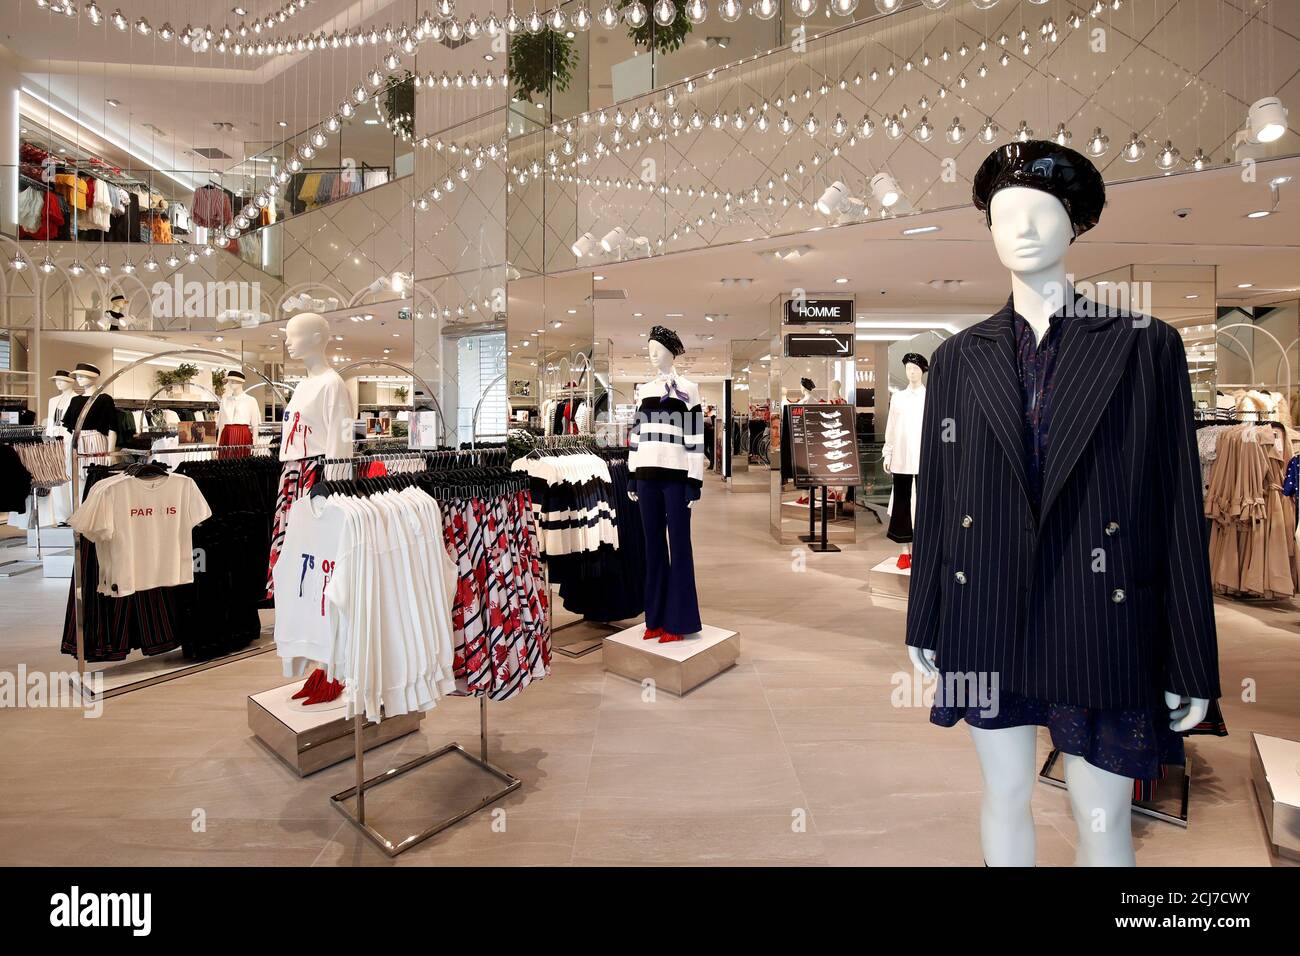 Mannequins zeigt Damenbekleidung im Flagship Store von Hennes & Mauritz ab ( H&M) in Paris, Frankreich, 18. Juni 2018. REUTERS/Benoit Tessier  Stockfotografie - Alamy